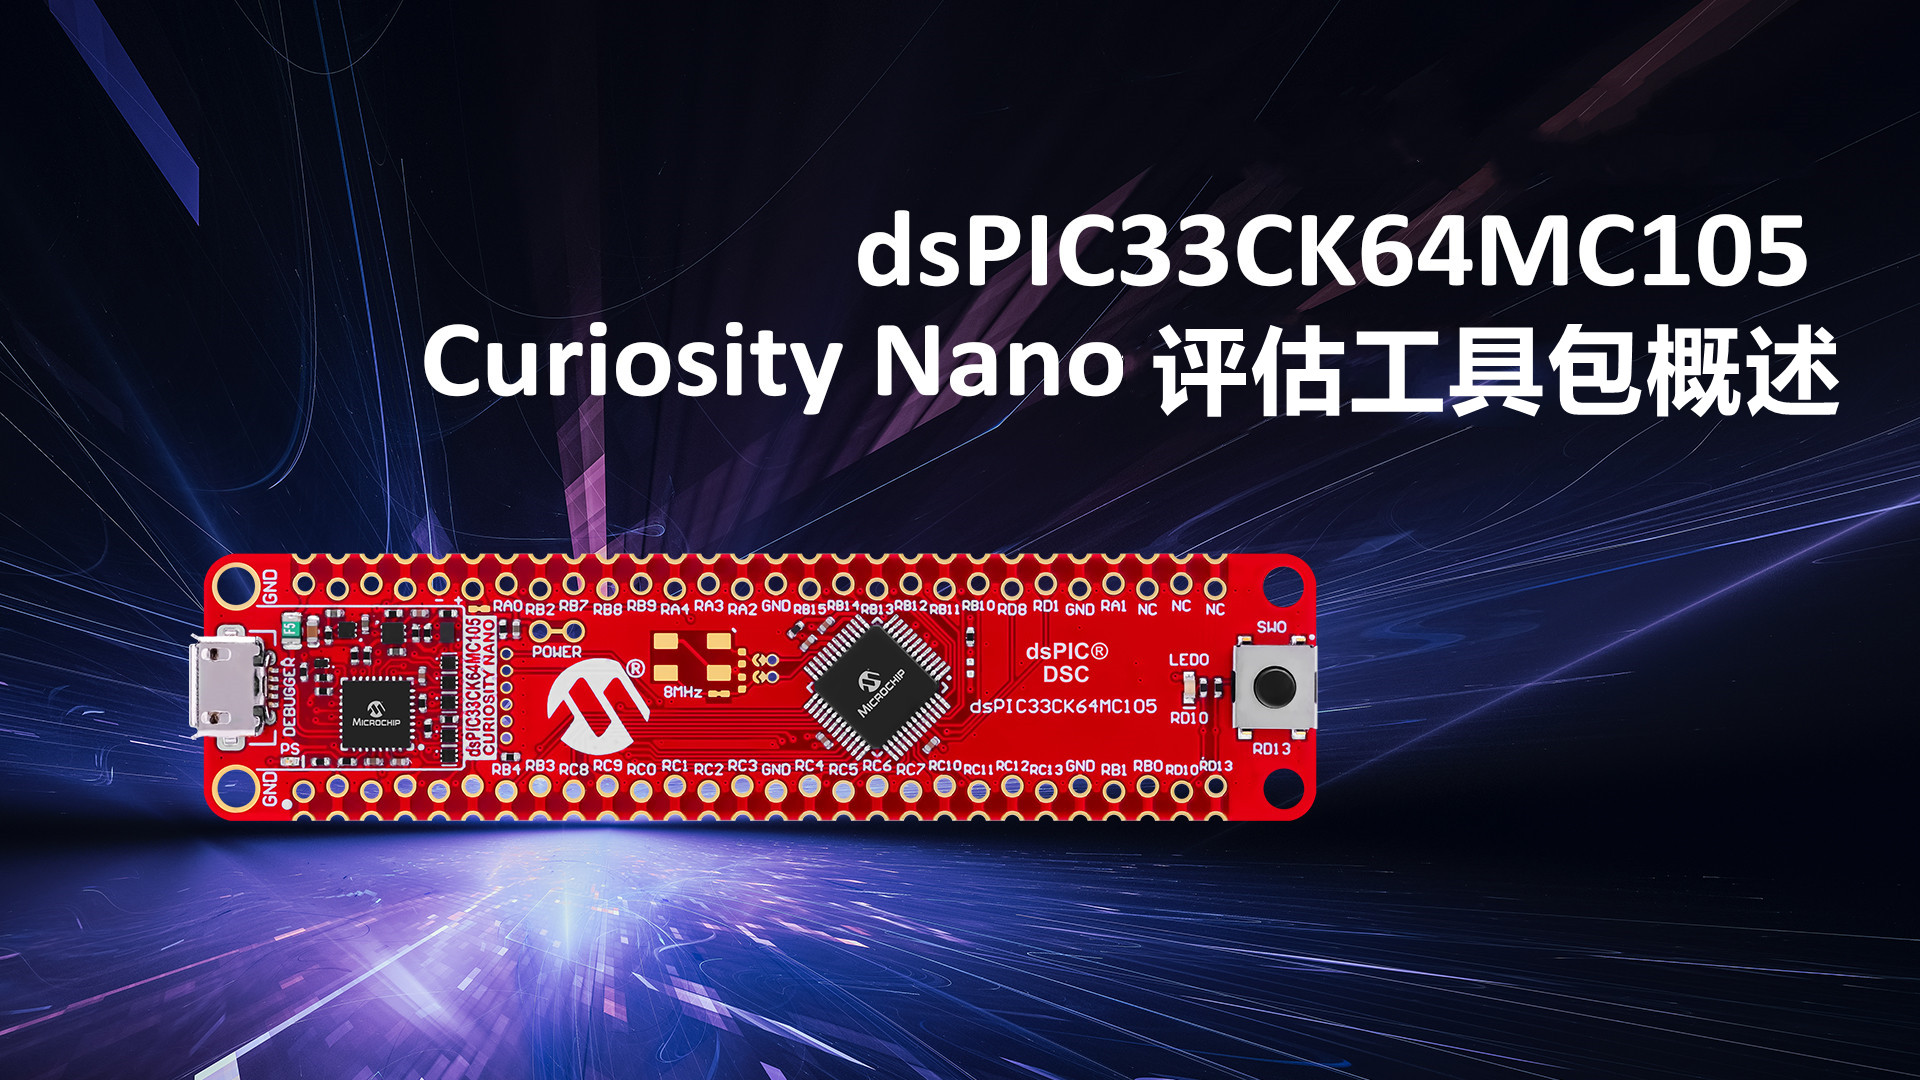 dsPIC33CK64MC105 Curiosity Nano评估工具包概述